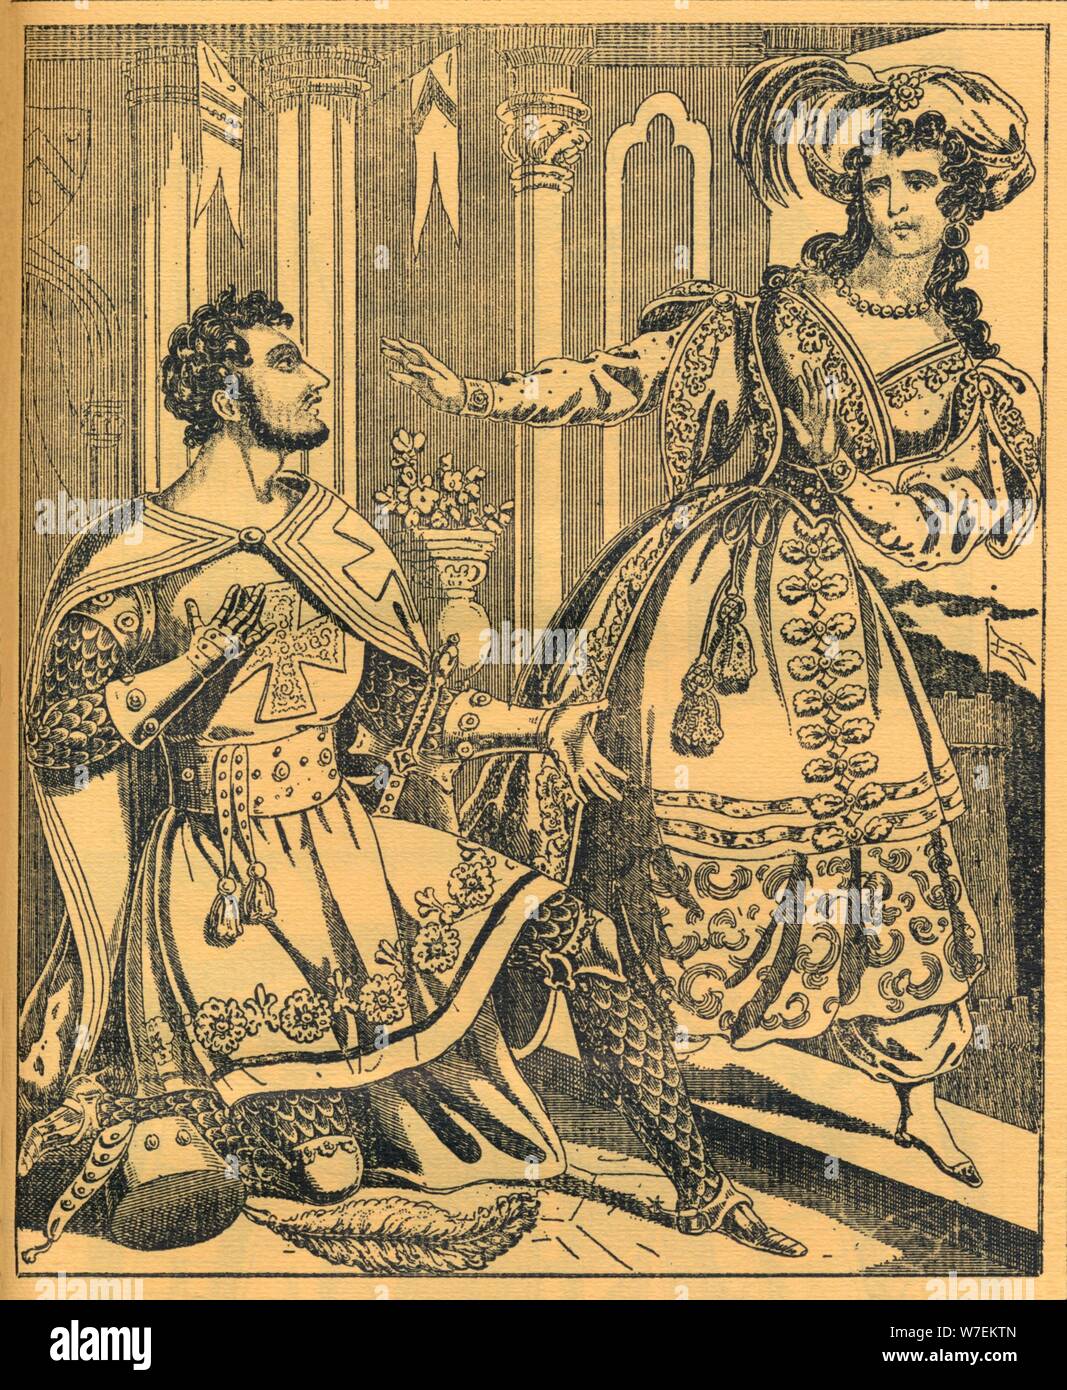 'Ivanhoe: Sir Brian de Bois Guilbert & Rebecca', 19th century. Artists: JL Marks, Ralph Nevill. Stock Photo